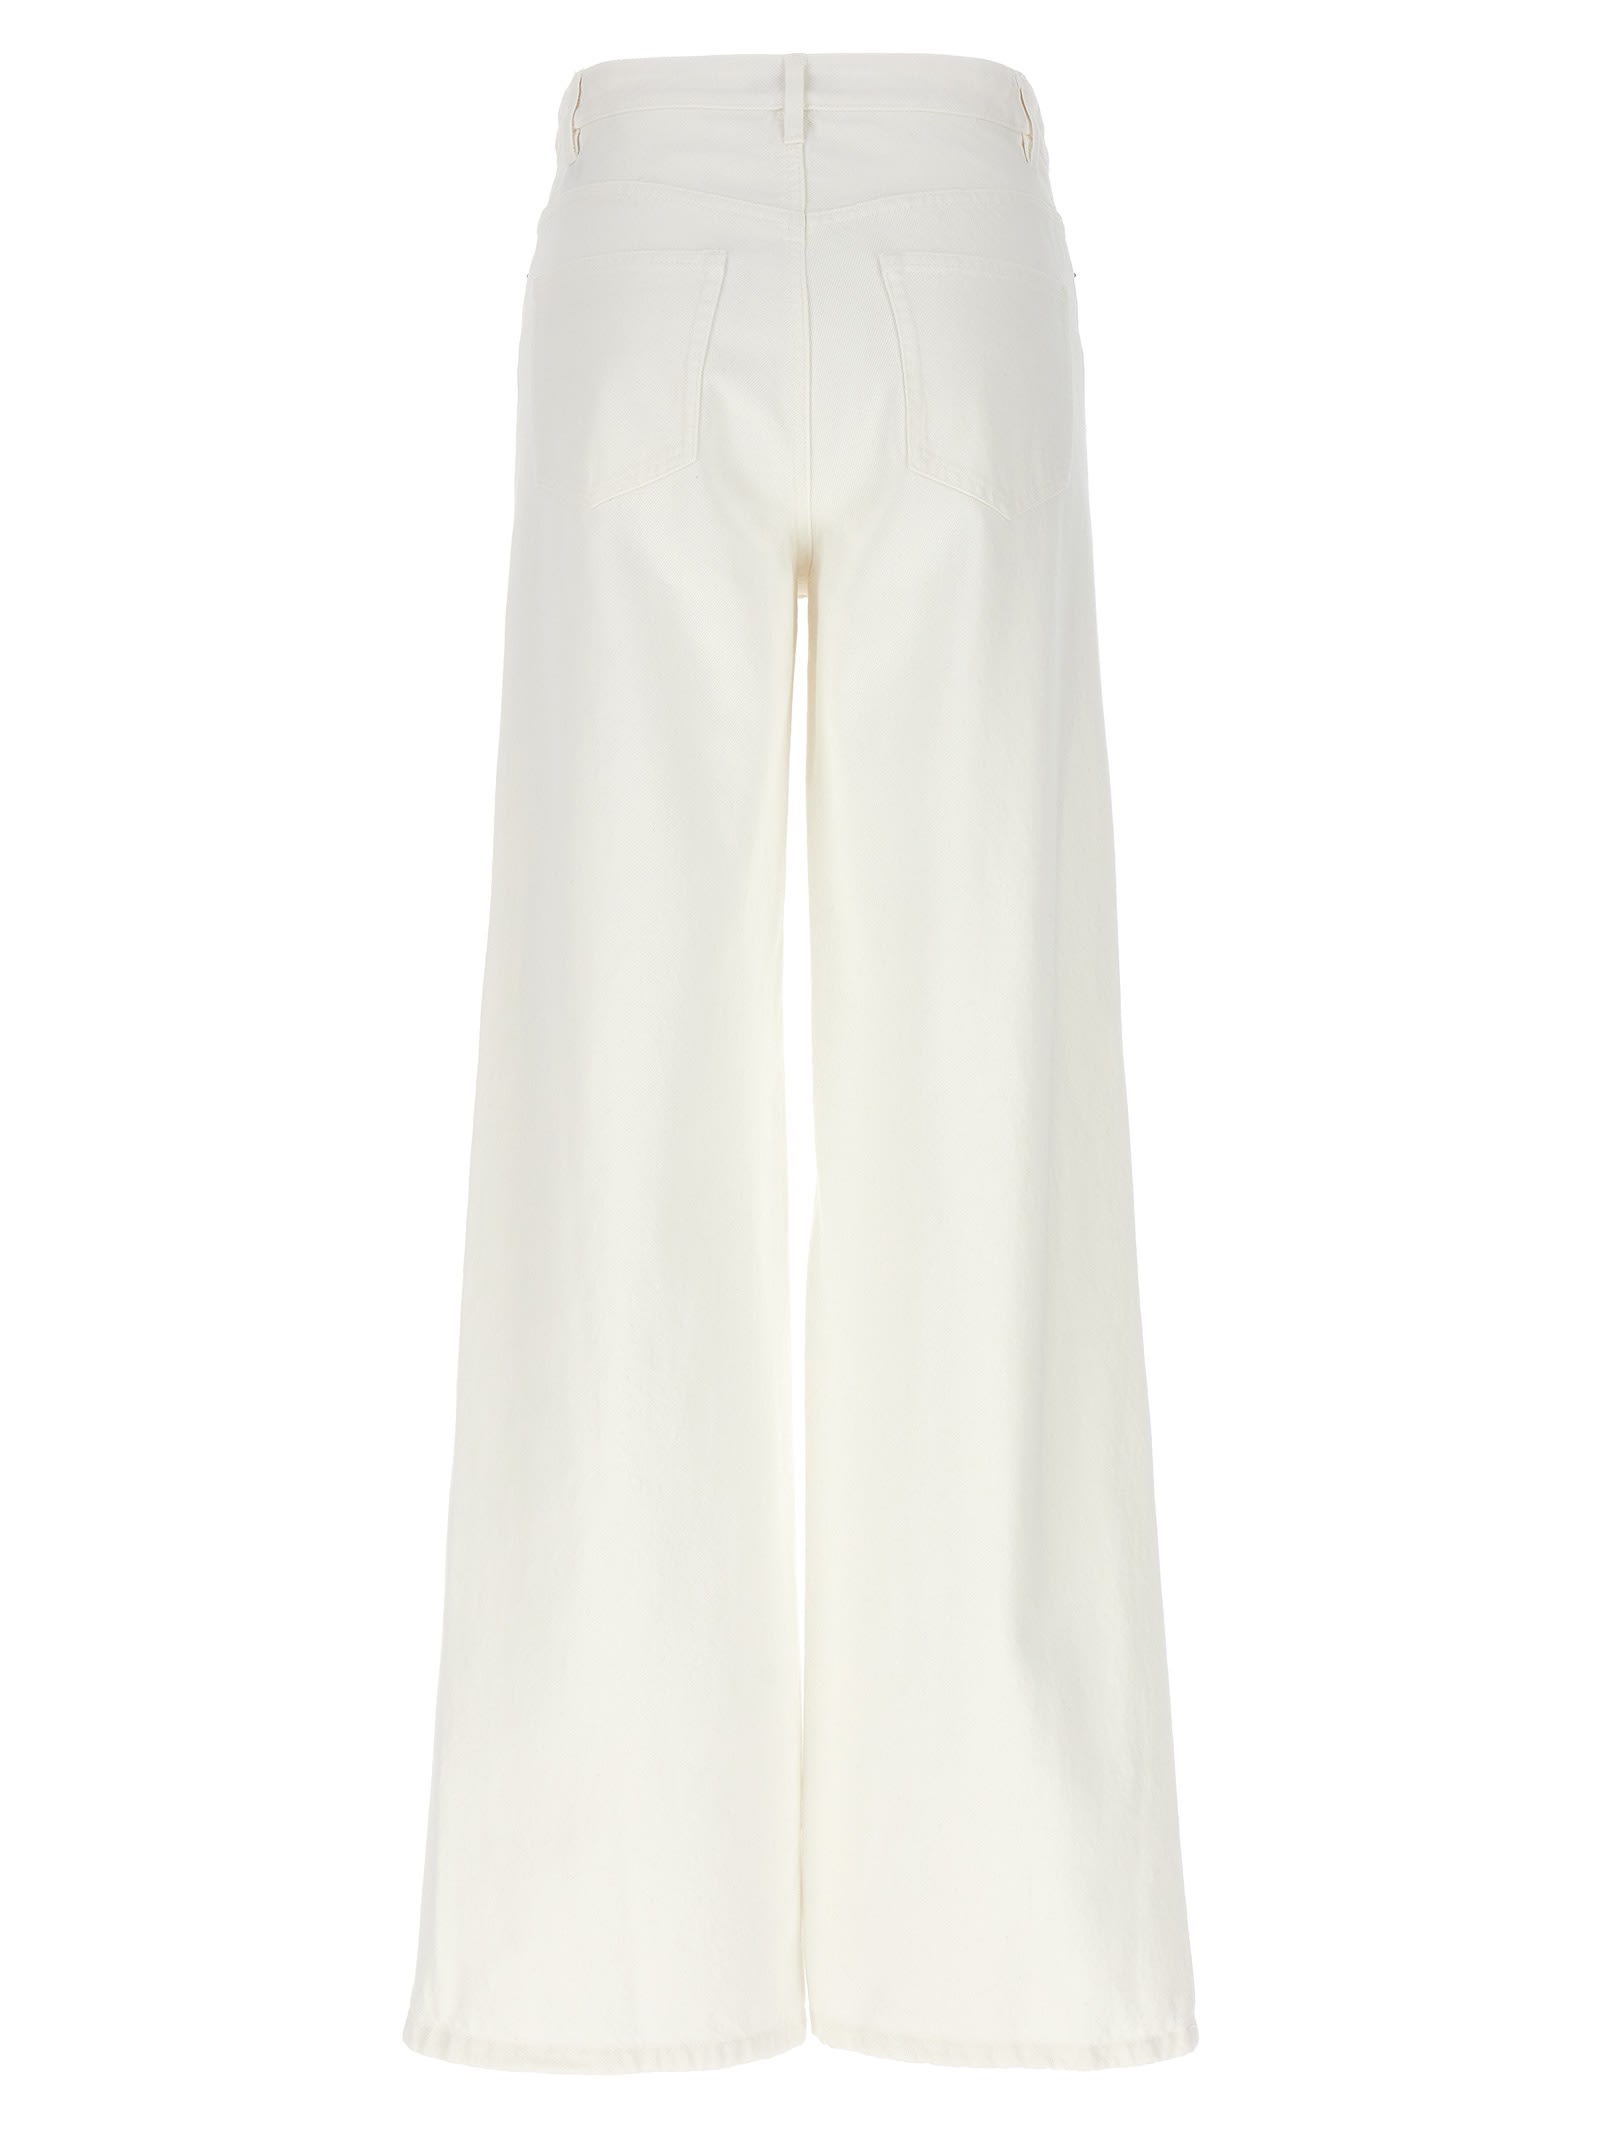 Shop Apc Elisabeth Jeans In White